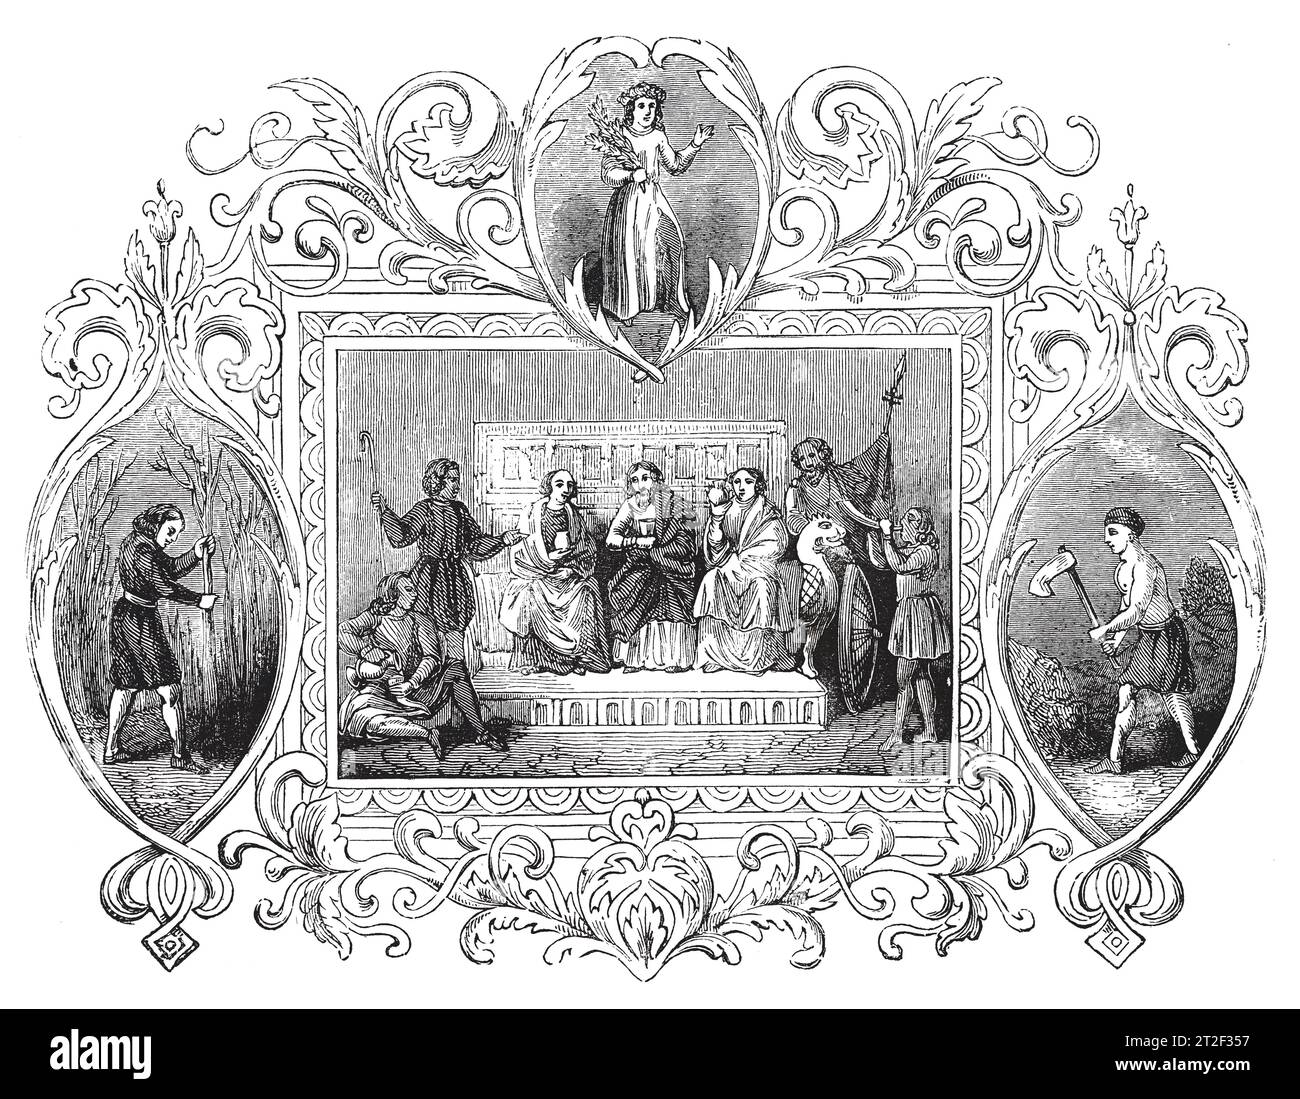 Emblemi sassoni del mese di aprile. Black and White Illustration from the 'Old England' pubblicato da James Sangster nel 1860. Foto Stock